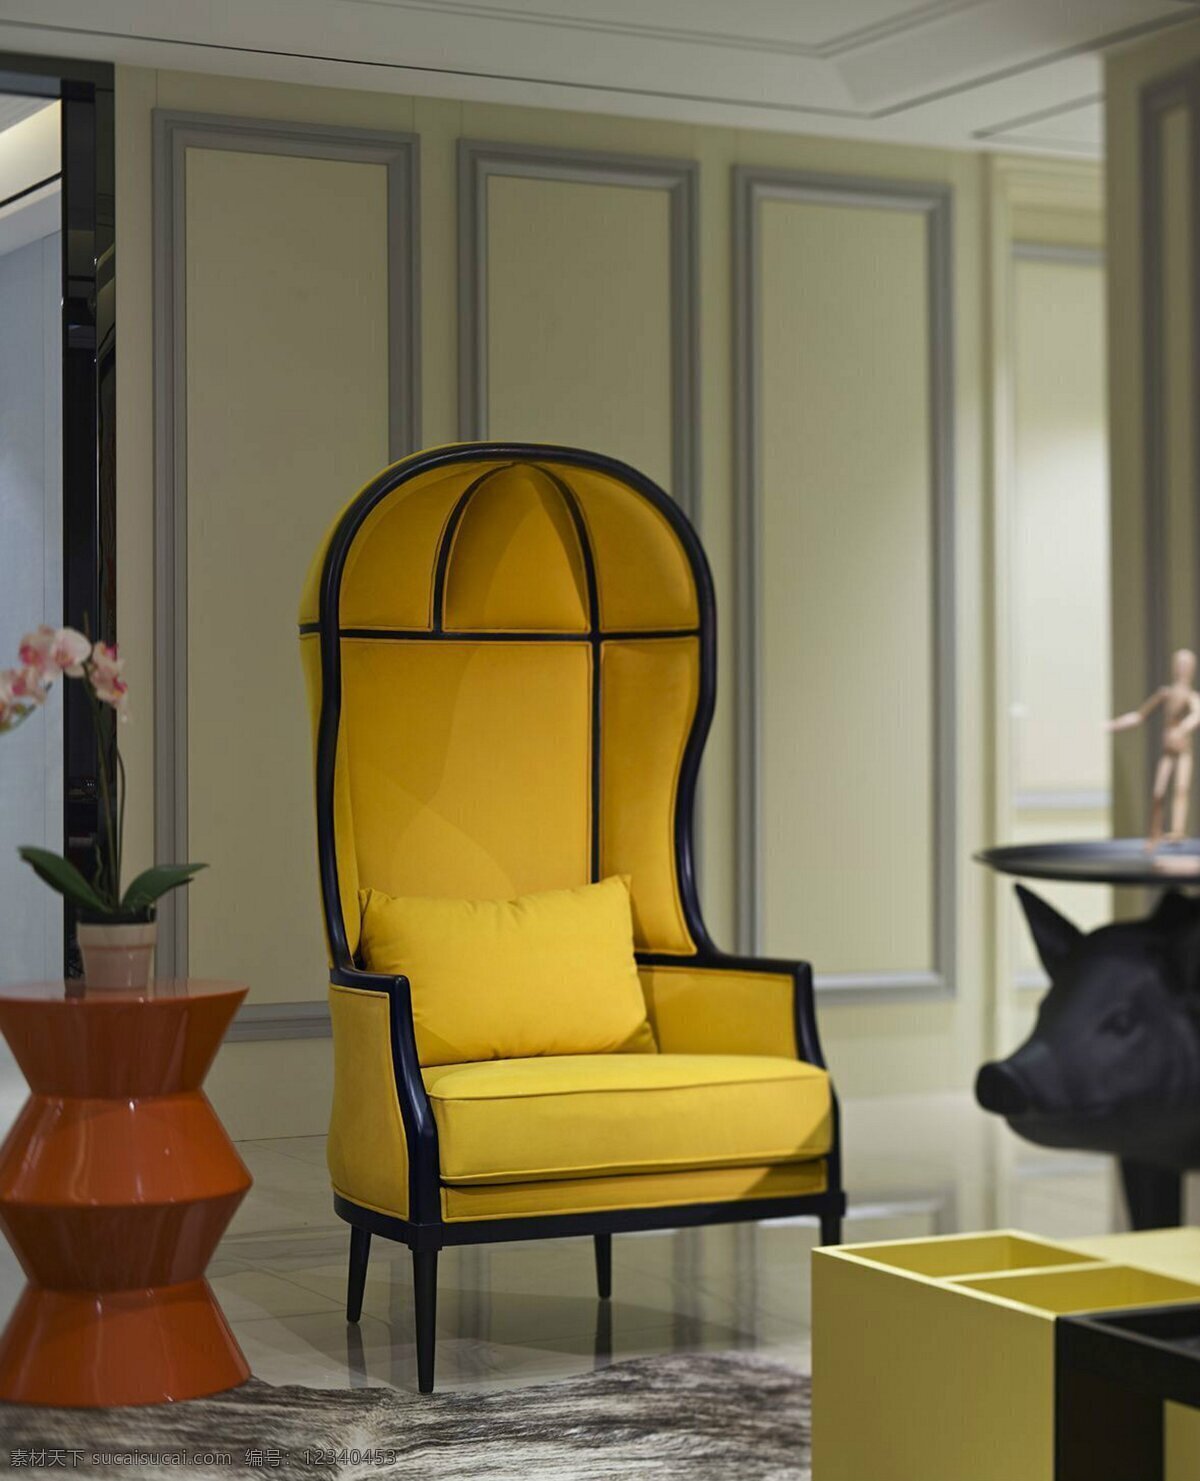 时尚 客厅 黄色 椅子 设计图 家居 家居生活 室内设计 装修 室内 家具 装修设计 环境设计 效果图 生活百科